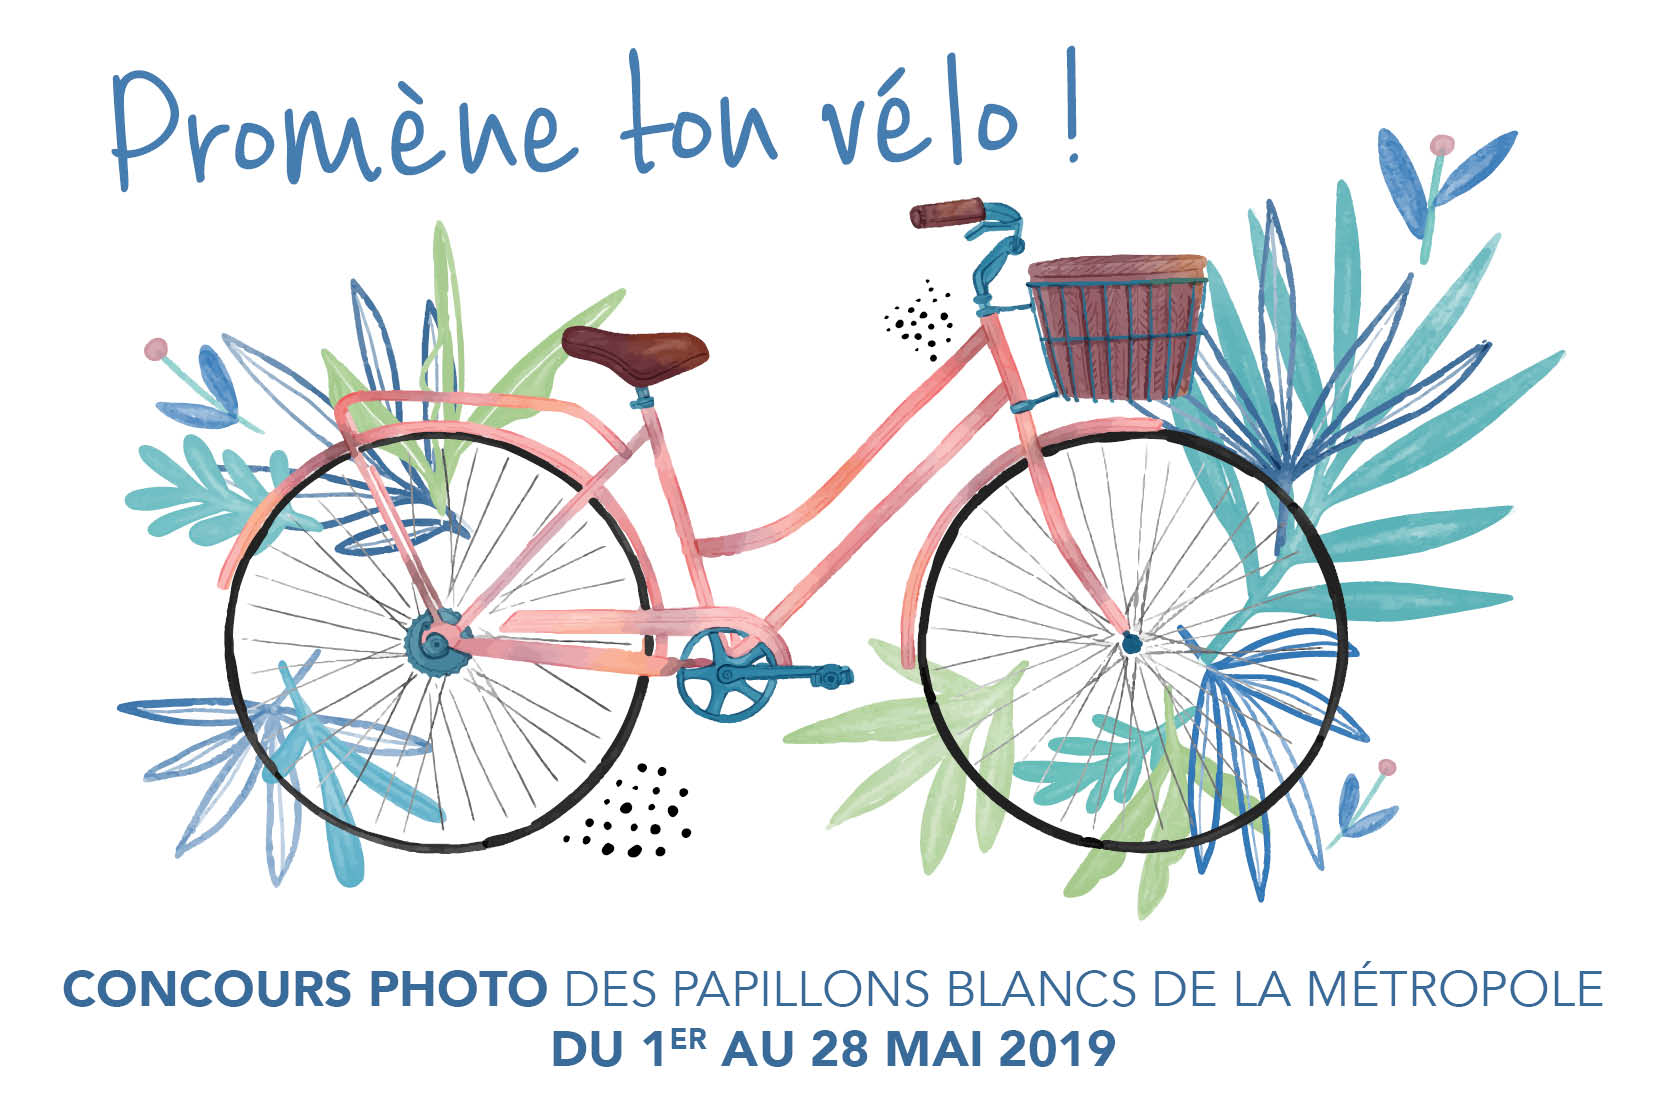 Concours photo Promène ton vélo challenge vélo 2019 Les Papillons Blancs de Lille